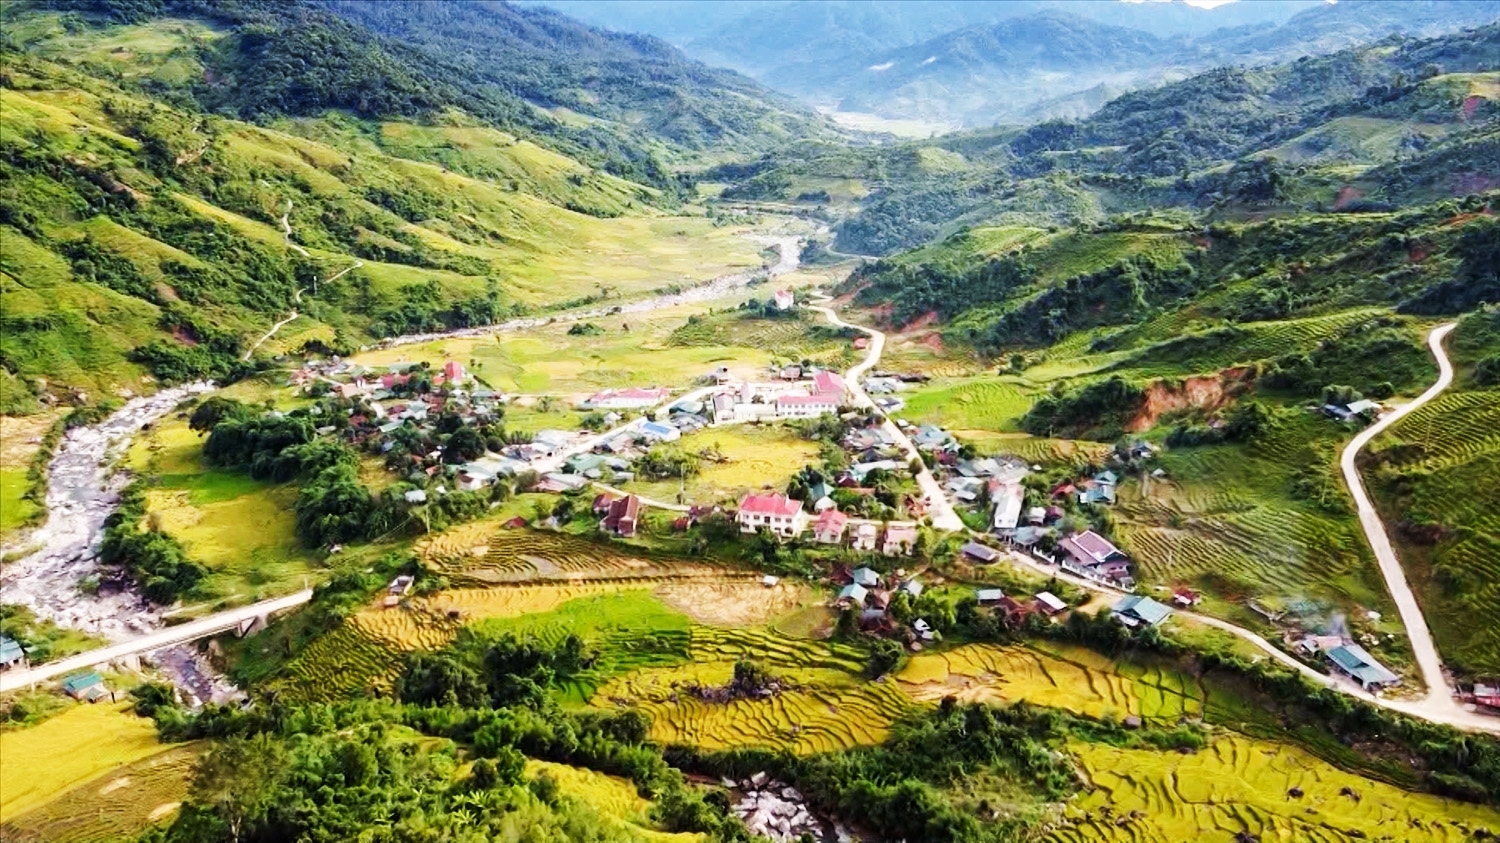 Xã Ngọc Linh nơi có tỷ lệ hộ nghèo cao nhất tỉnh Kon Tum, bởi đồng bào DTTS nơi đây còn duy trì phương thức sản xuất cũ và các hủ tục lạc hậu